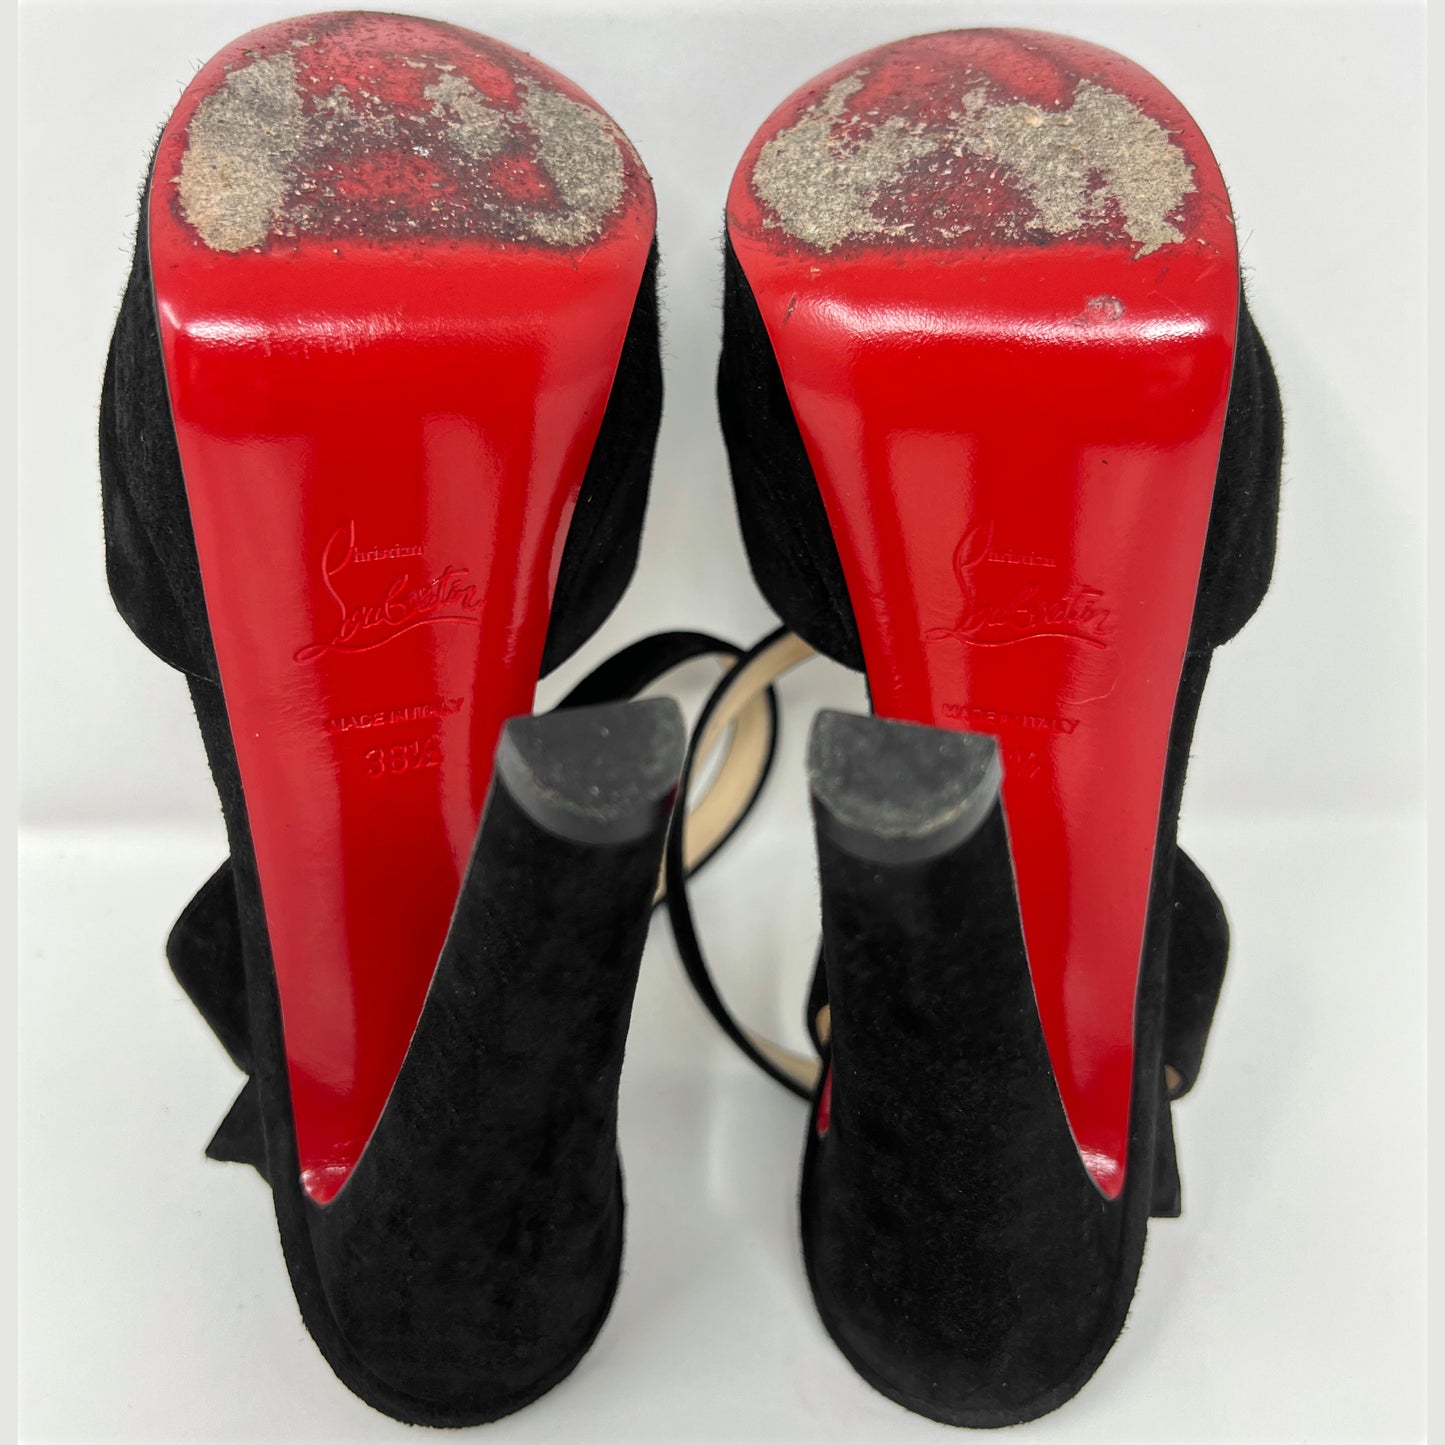 Christian Louboutin Louloudancing Black Suede Platform Peep Toe Sandals Pumps Size EU 38.5